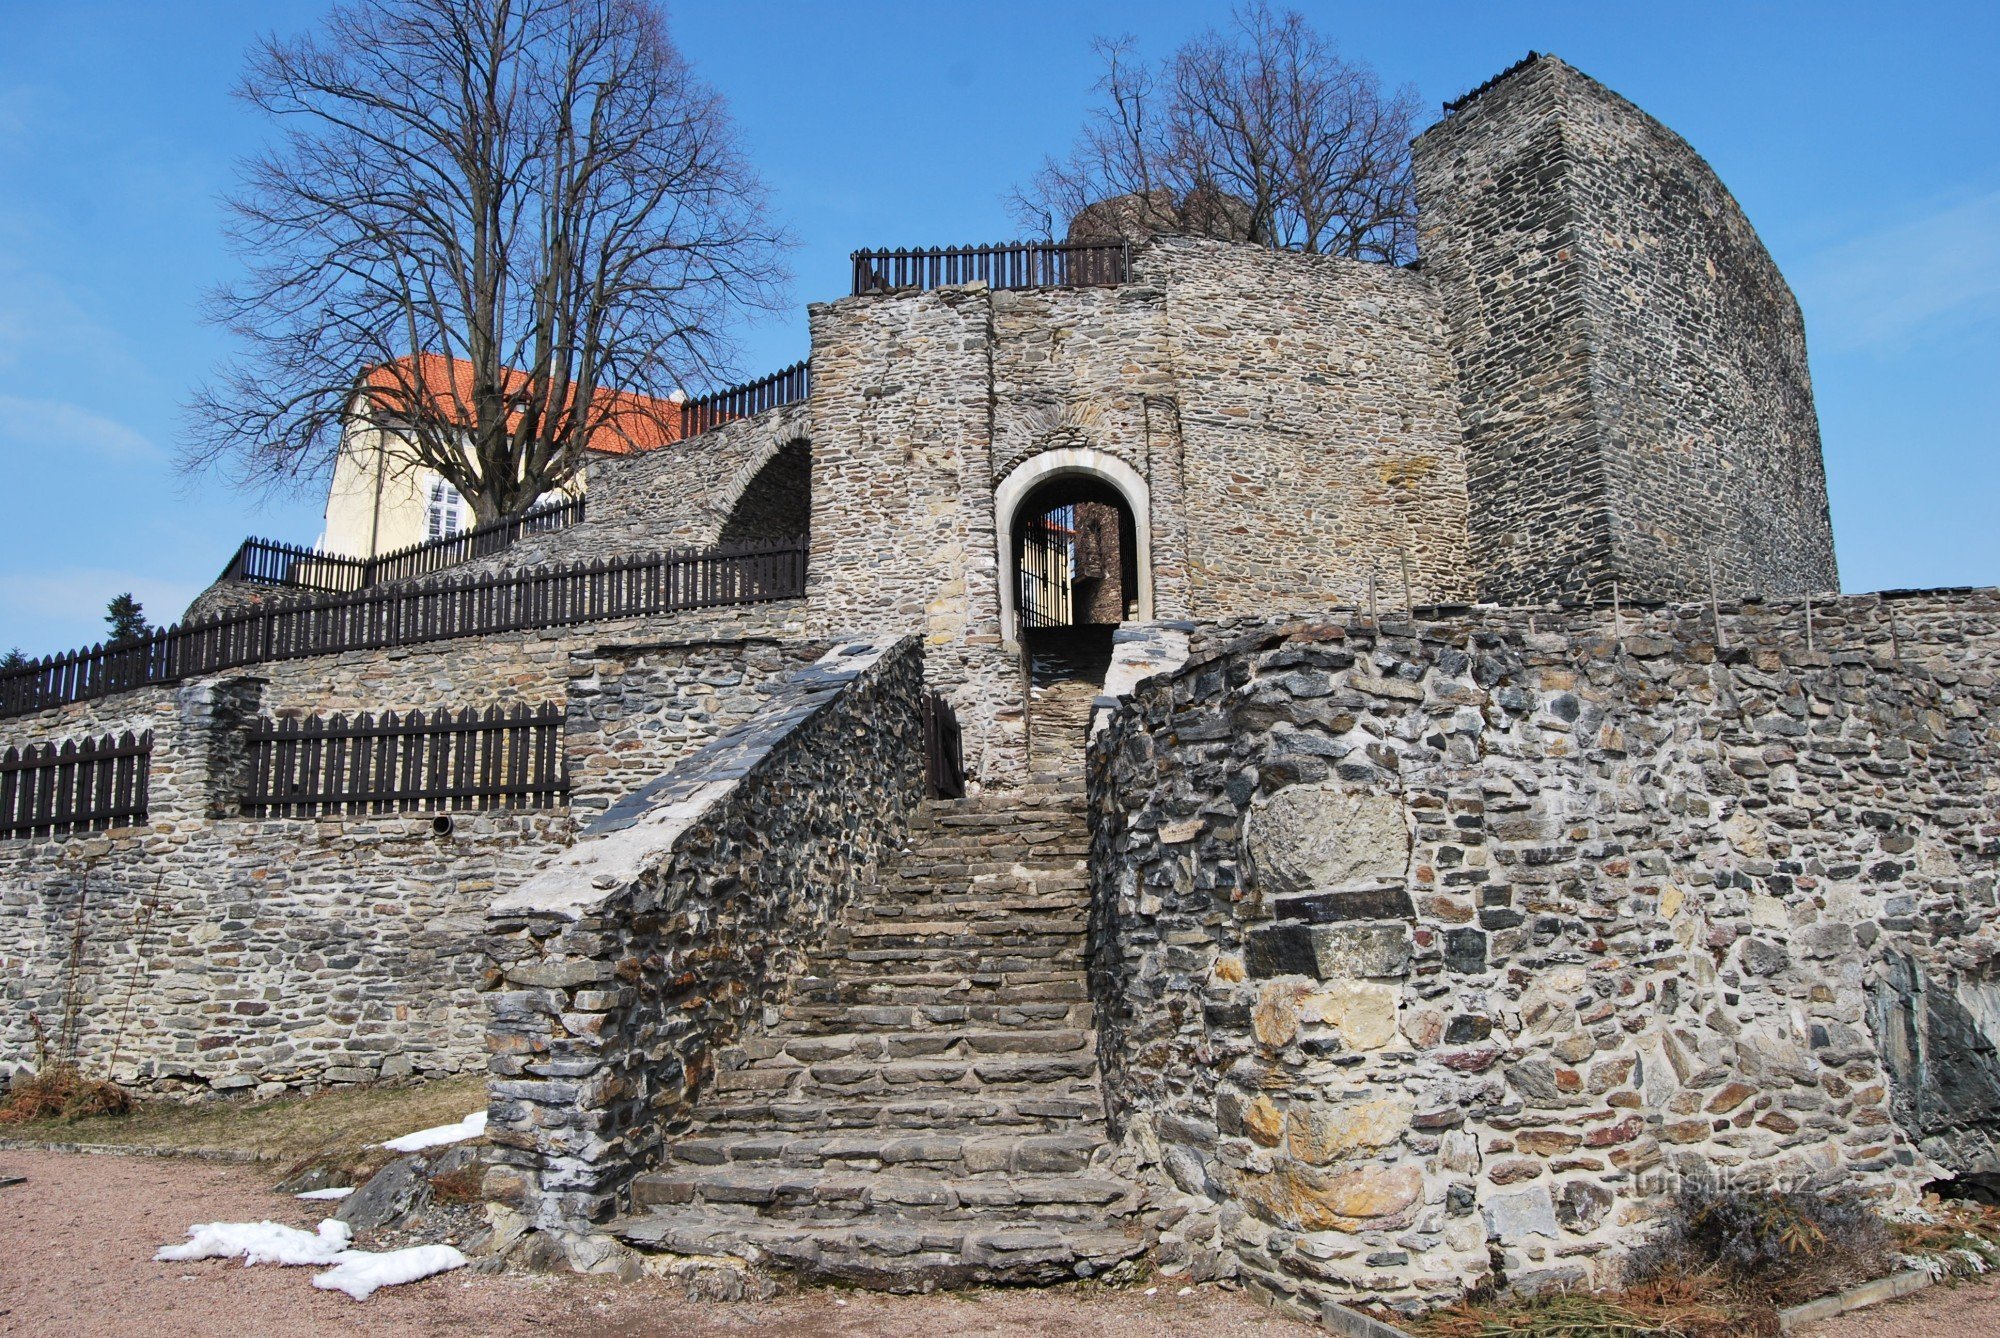 Excursion to Svojanov Castle